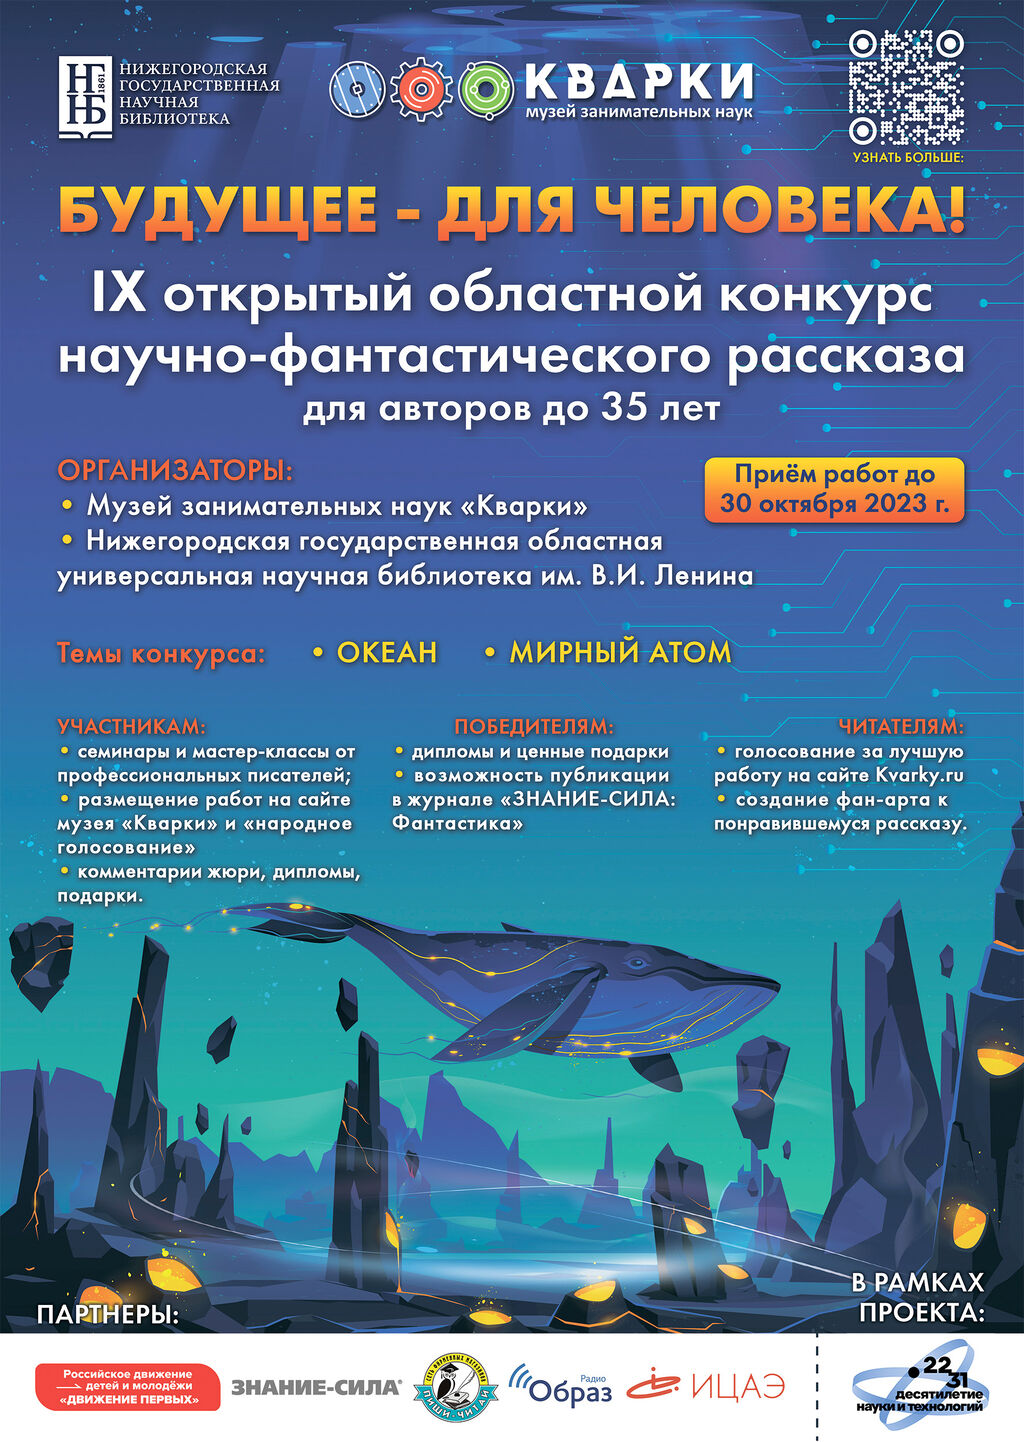 IX открытый областной конкурс научно-фантастического рассказа